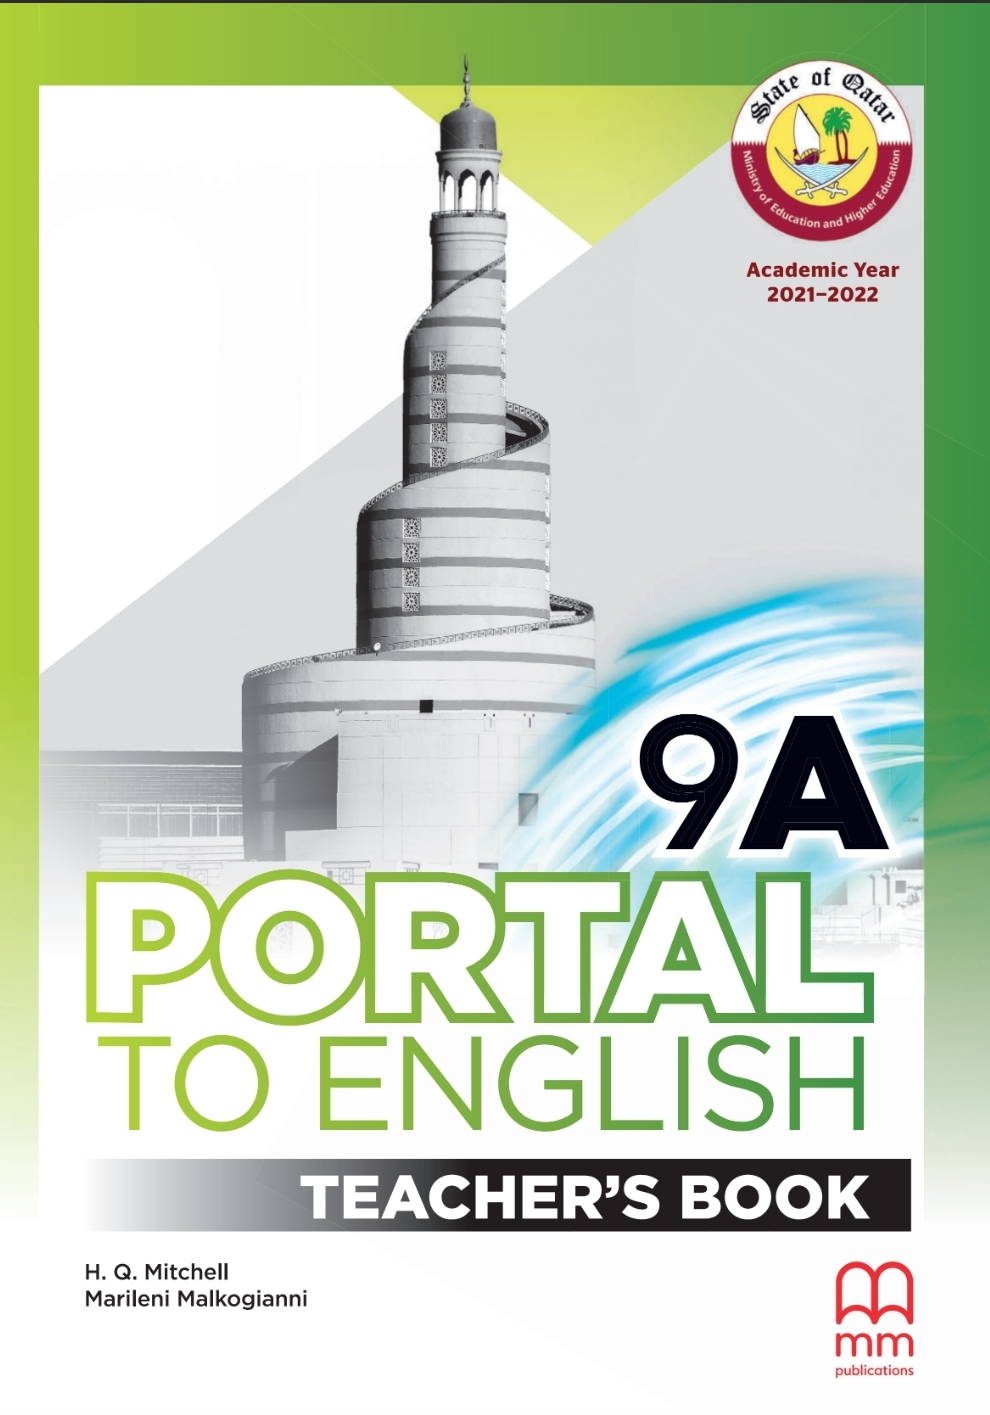 دليل المعلم في اللغة الإنكليزية للمستوى التاسع الفصل الأول قطر